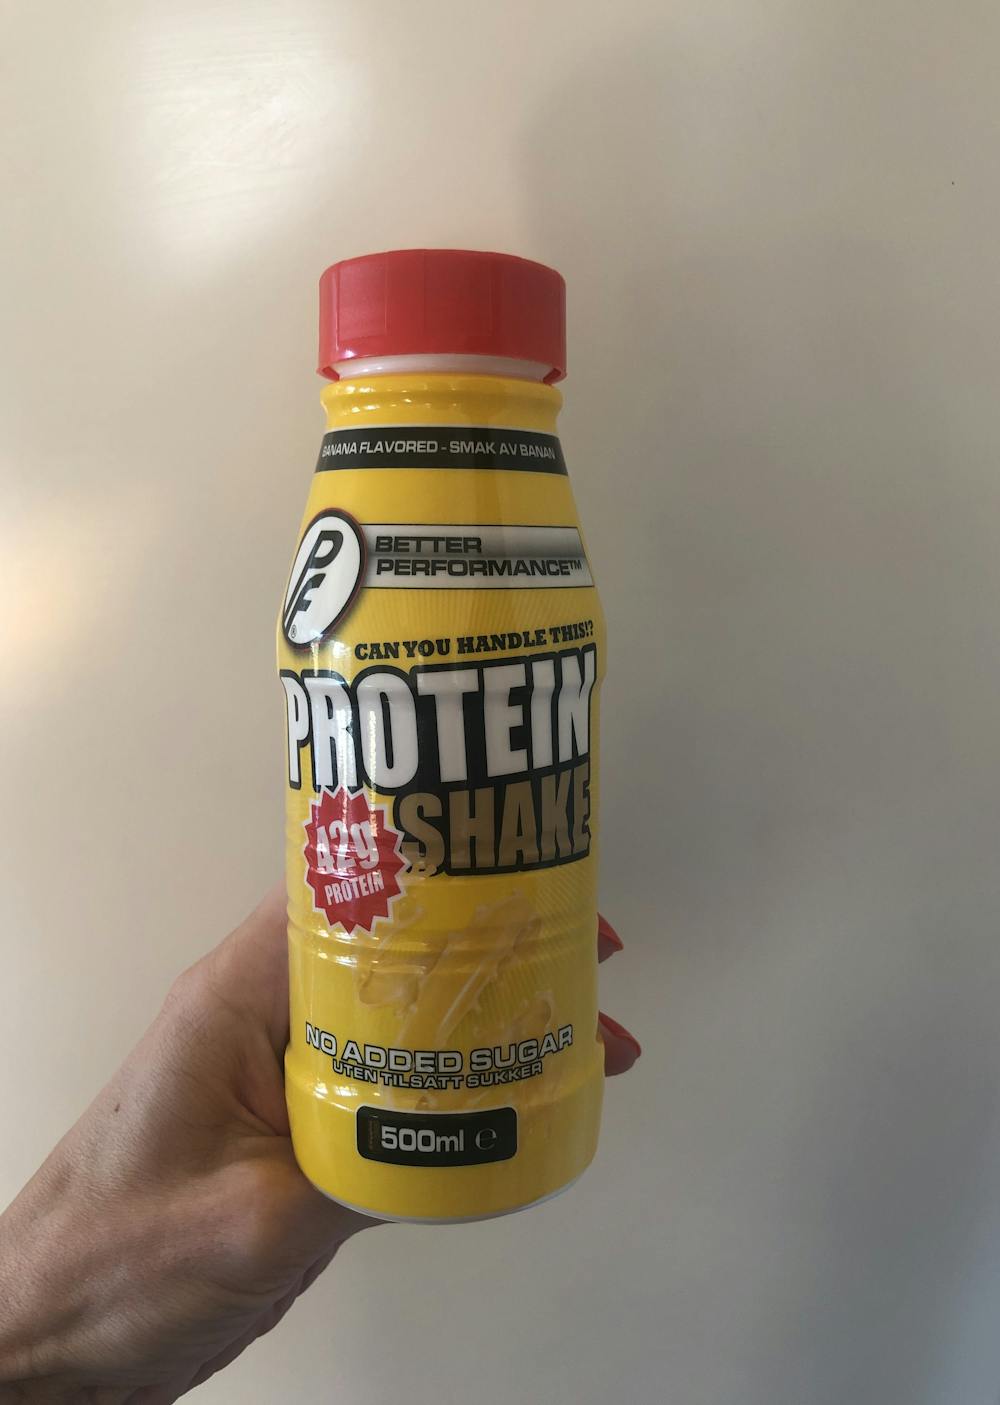 Protein shake banan, Proteinfabrikken